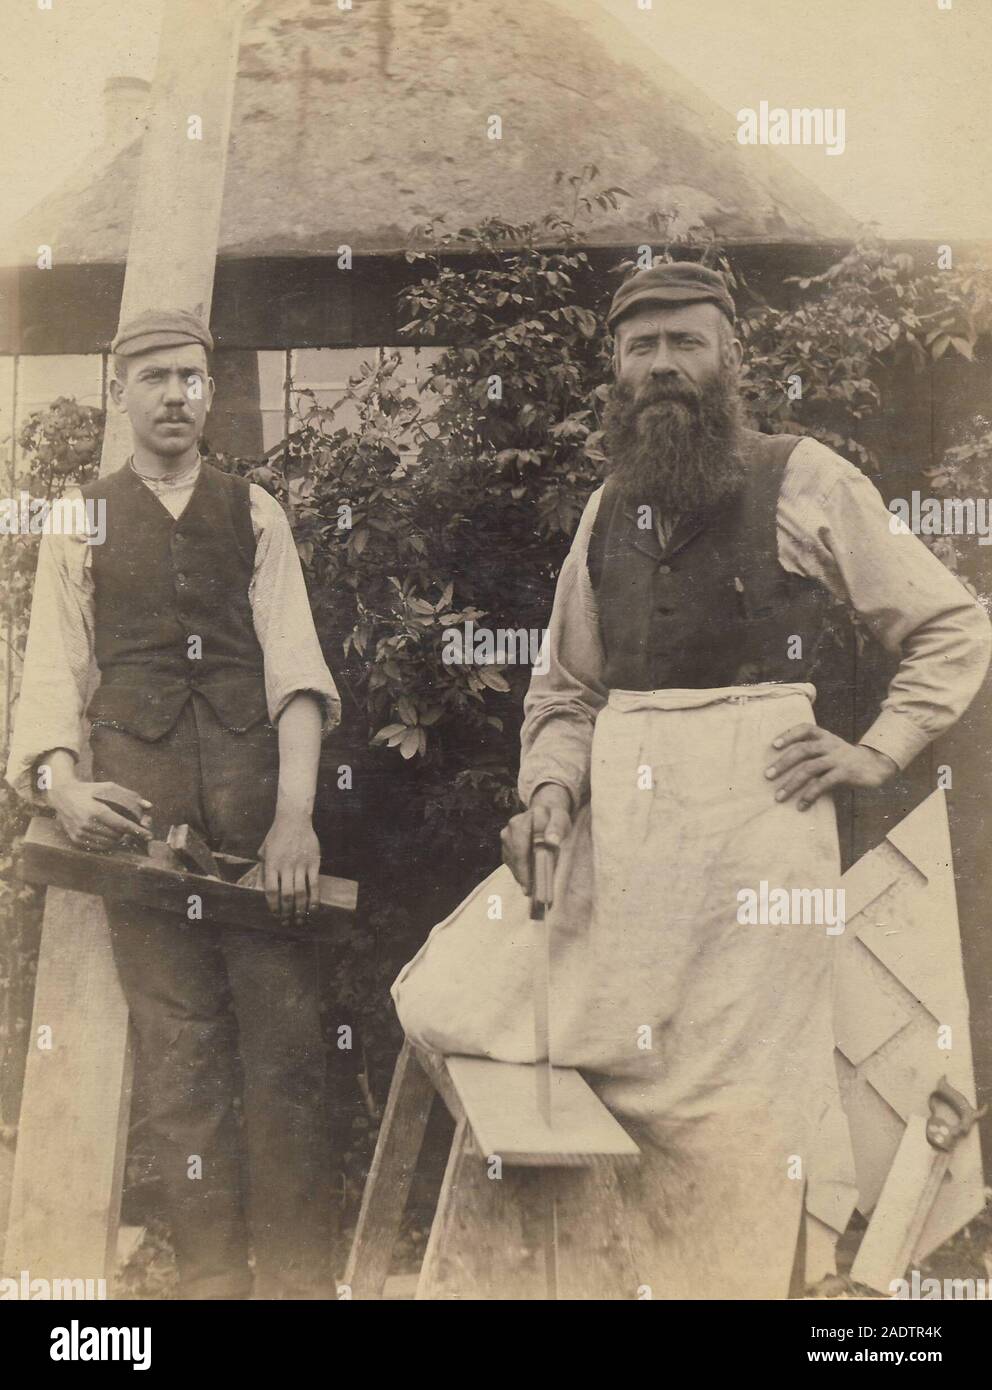 Archivio storico immagine di falegnami con strumenti, Edwardian, c1900s Foto Stock